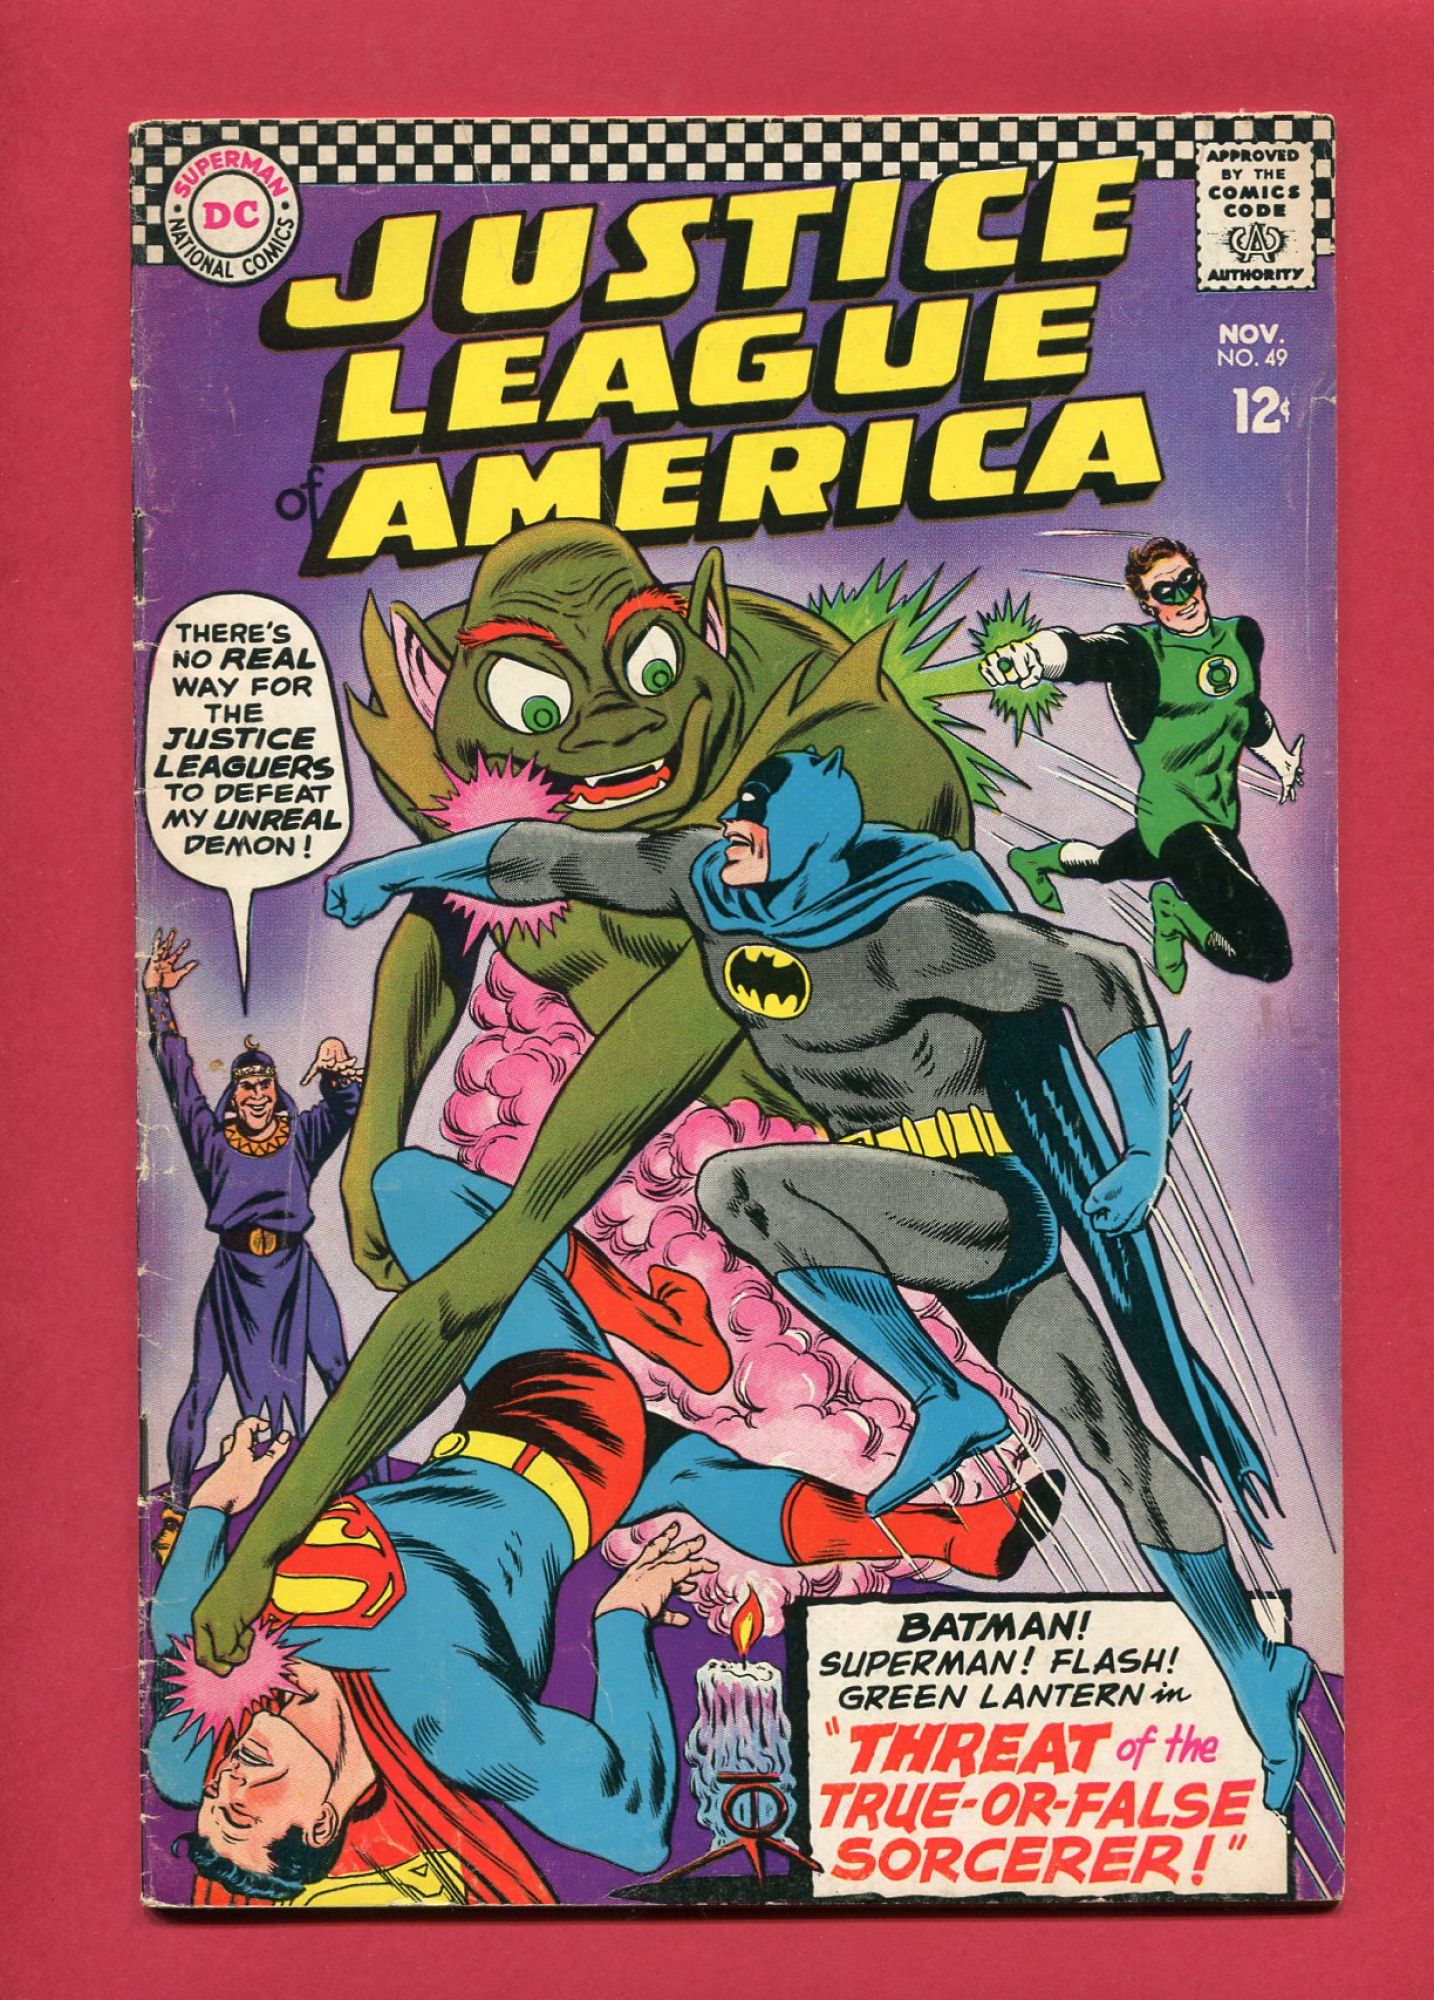 Justice League of America #49, Nov 1966, 4.5 VG+